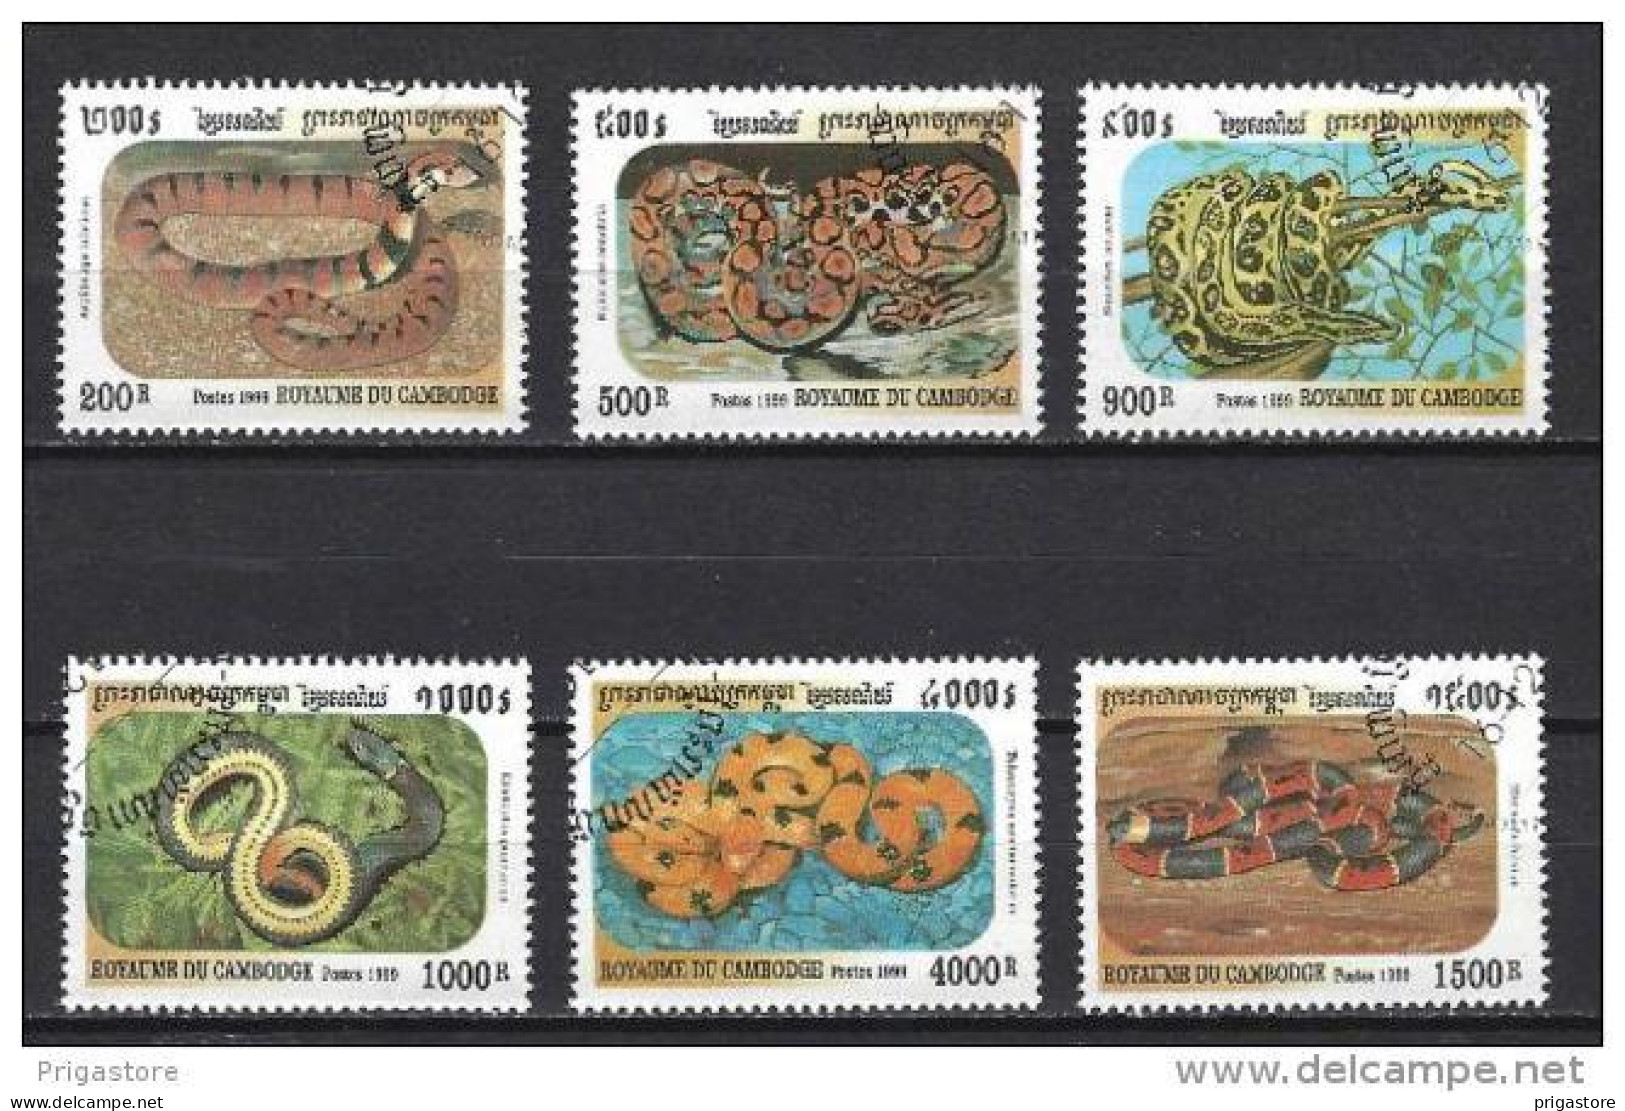 Animaux Serpents Cambodge 1999 (133) Yvert N° 1683 à 1688 Oblitérés Used - Slangen